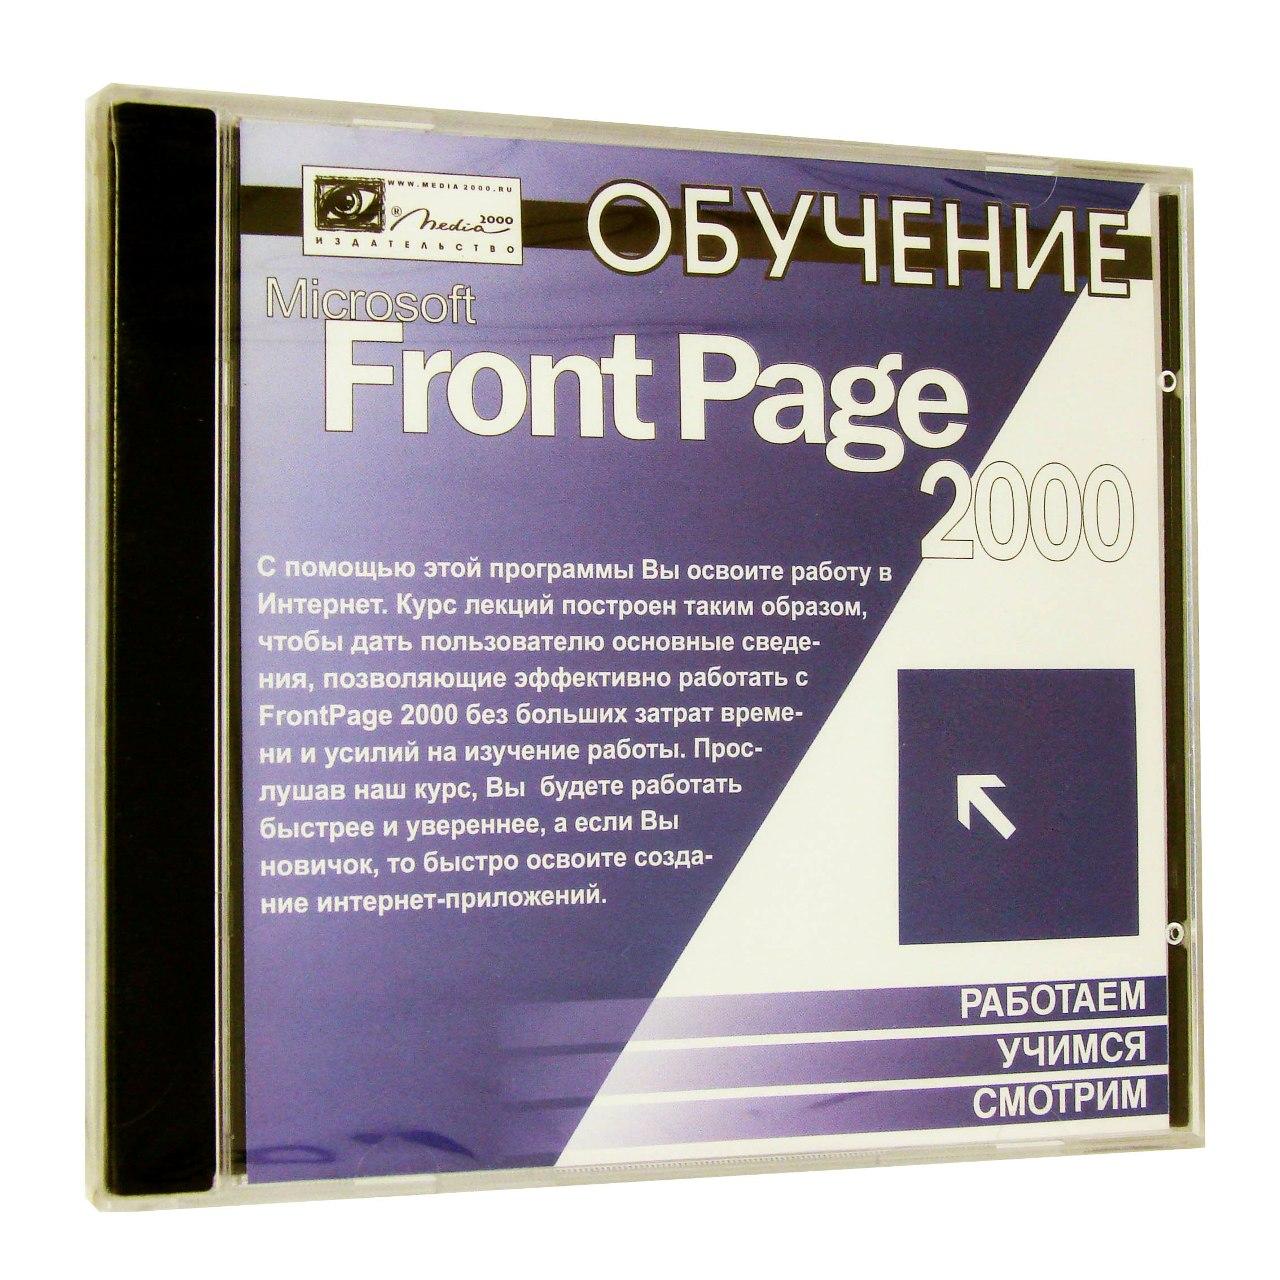 Компьютерный компакт-диск Обучение Microsoft FrontPage 2000 (PC), фирма "Медиа 2000", 1CD